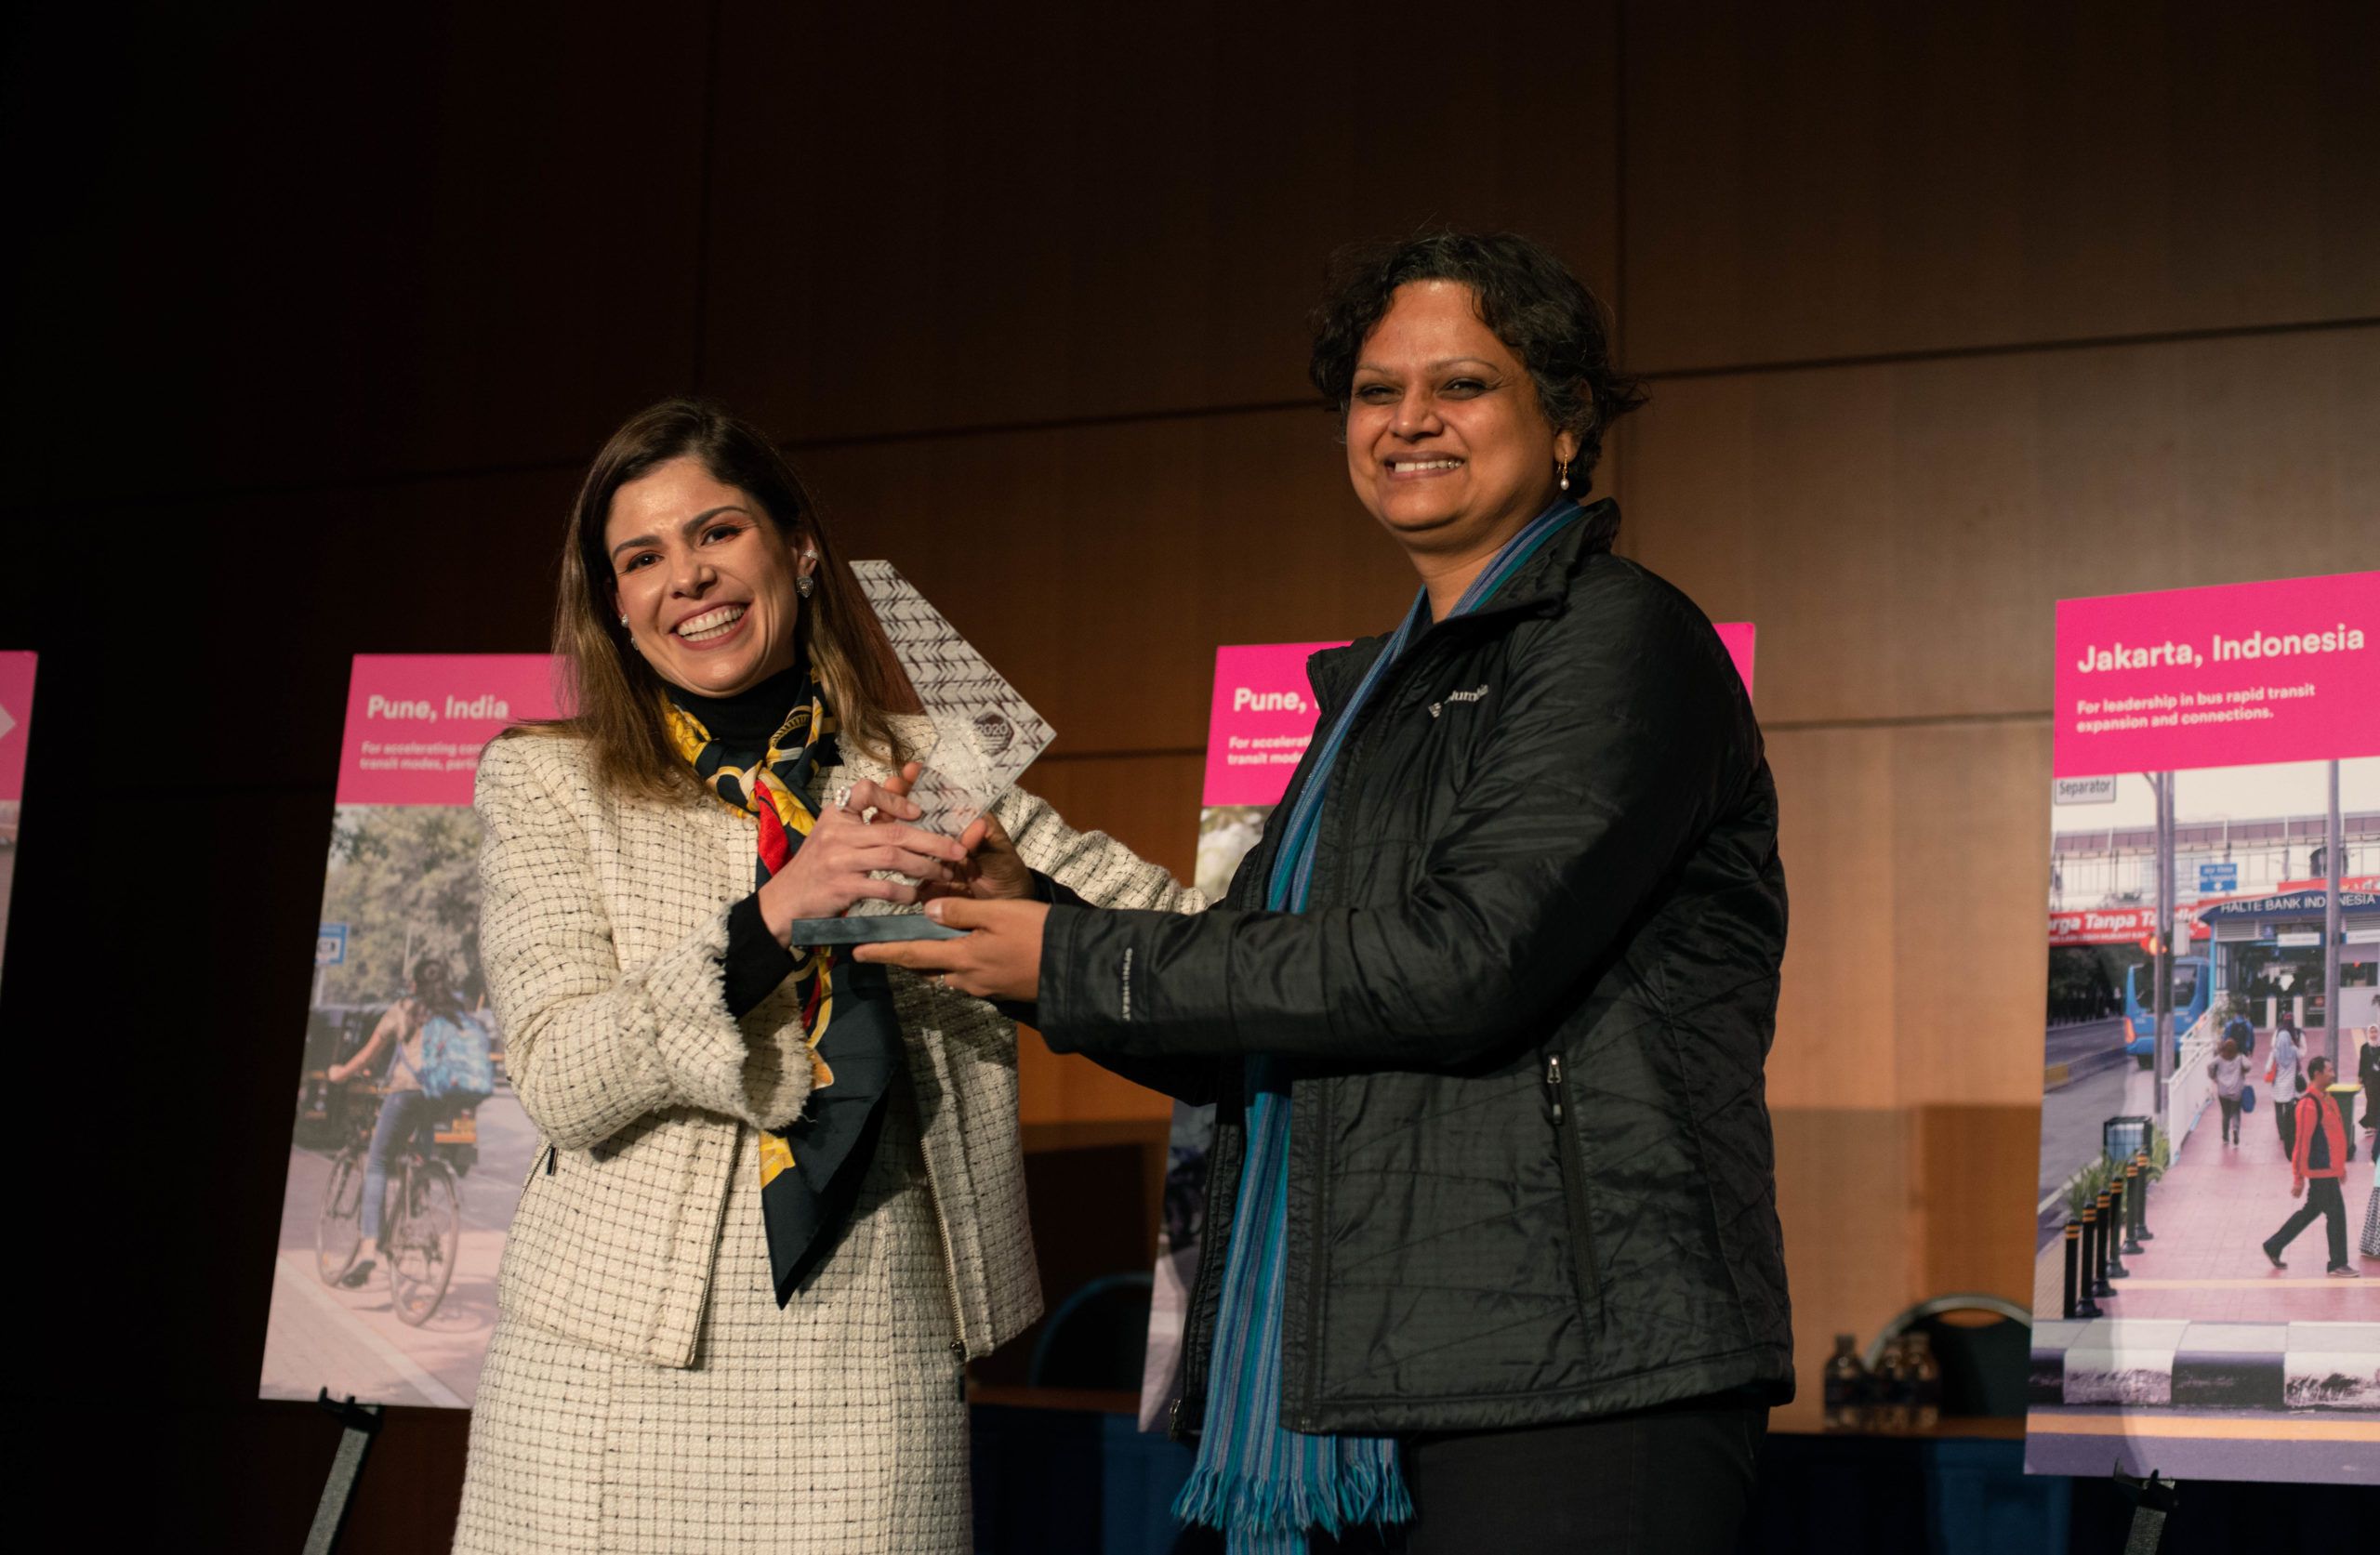 Pune, Jakarta Honored at Sustainable Transport Award Ceremony in Washington, DC